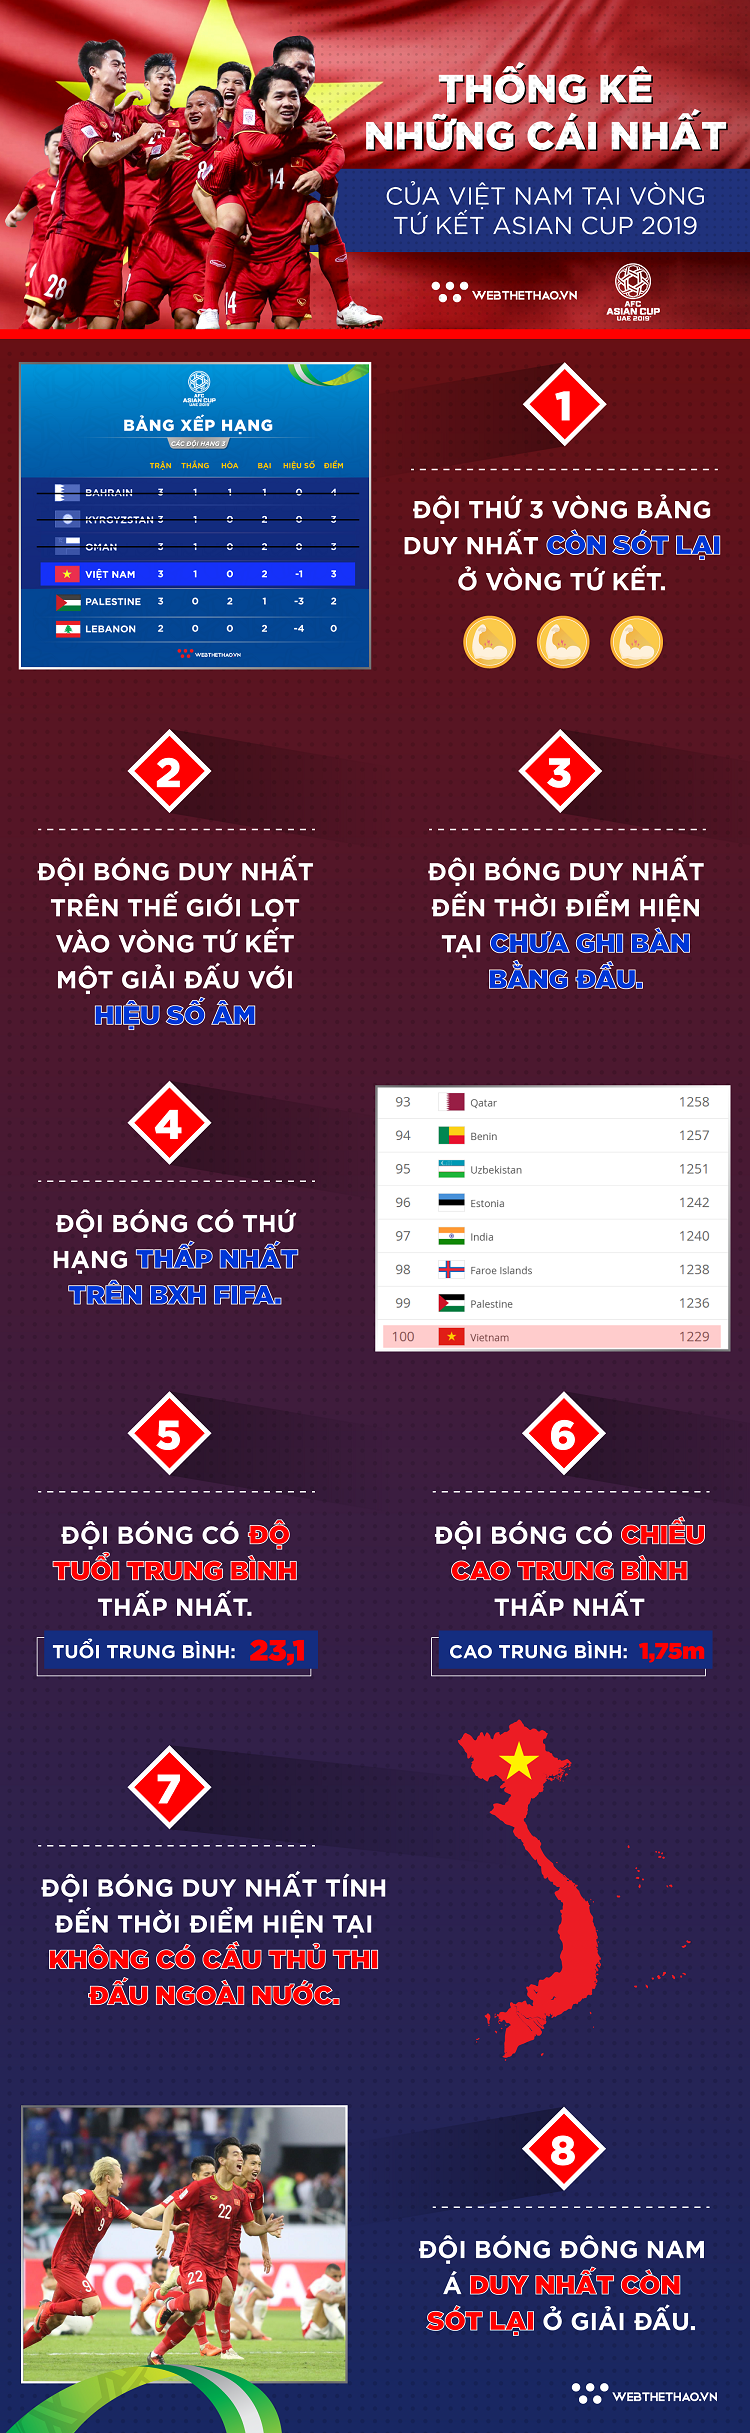 Những cái NHẤT của đội tuyển Việt Nam tại tứ kết Asian Cup 2019